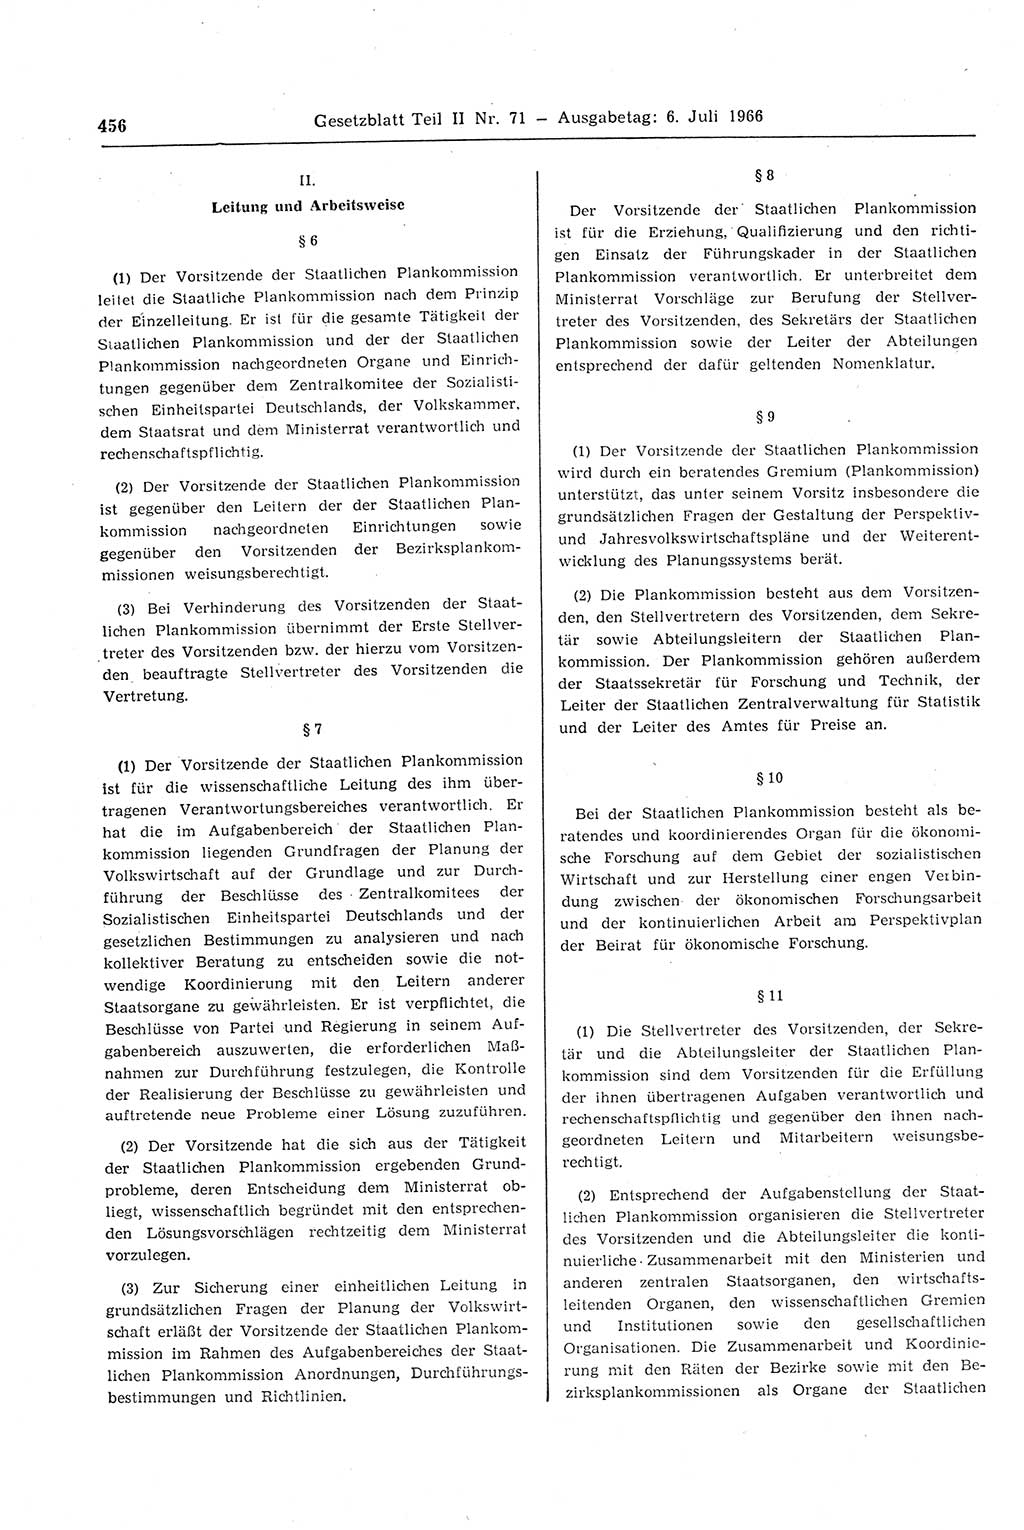 Gesetzblatt (GBl.) der Deutschen Demokratischen Republik (DDR) Teil ⅠⅠ 1966, Seite 456 (GBl. DDR ⅠⅠ 1966, S. 456)